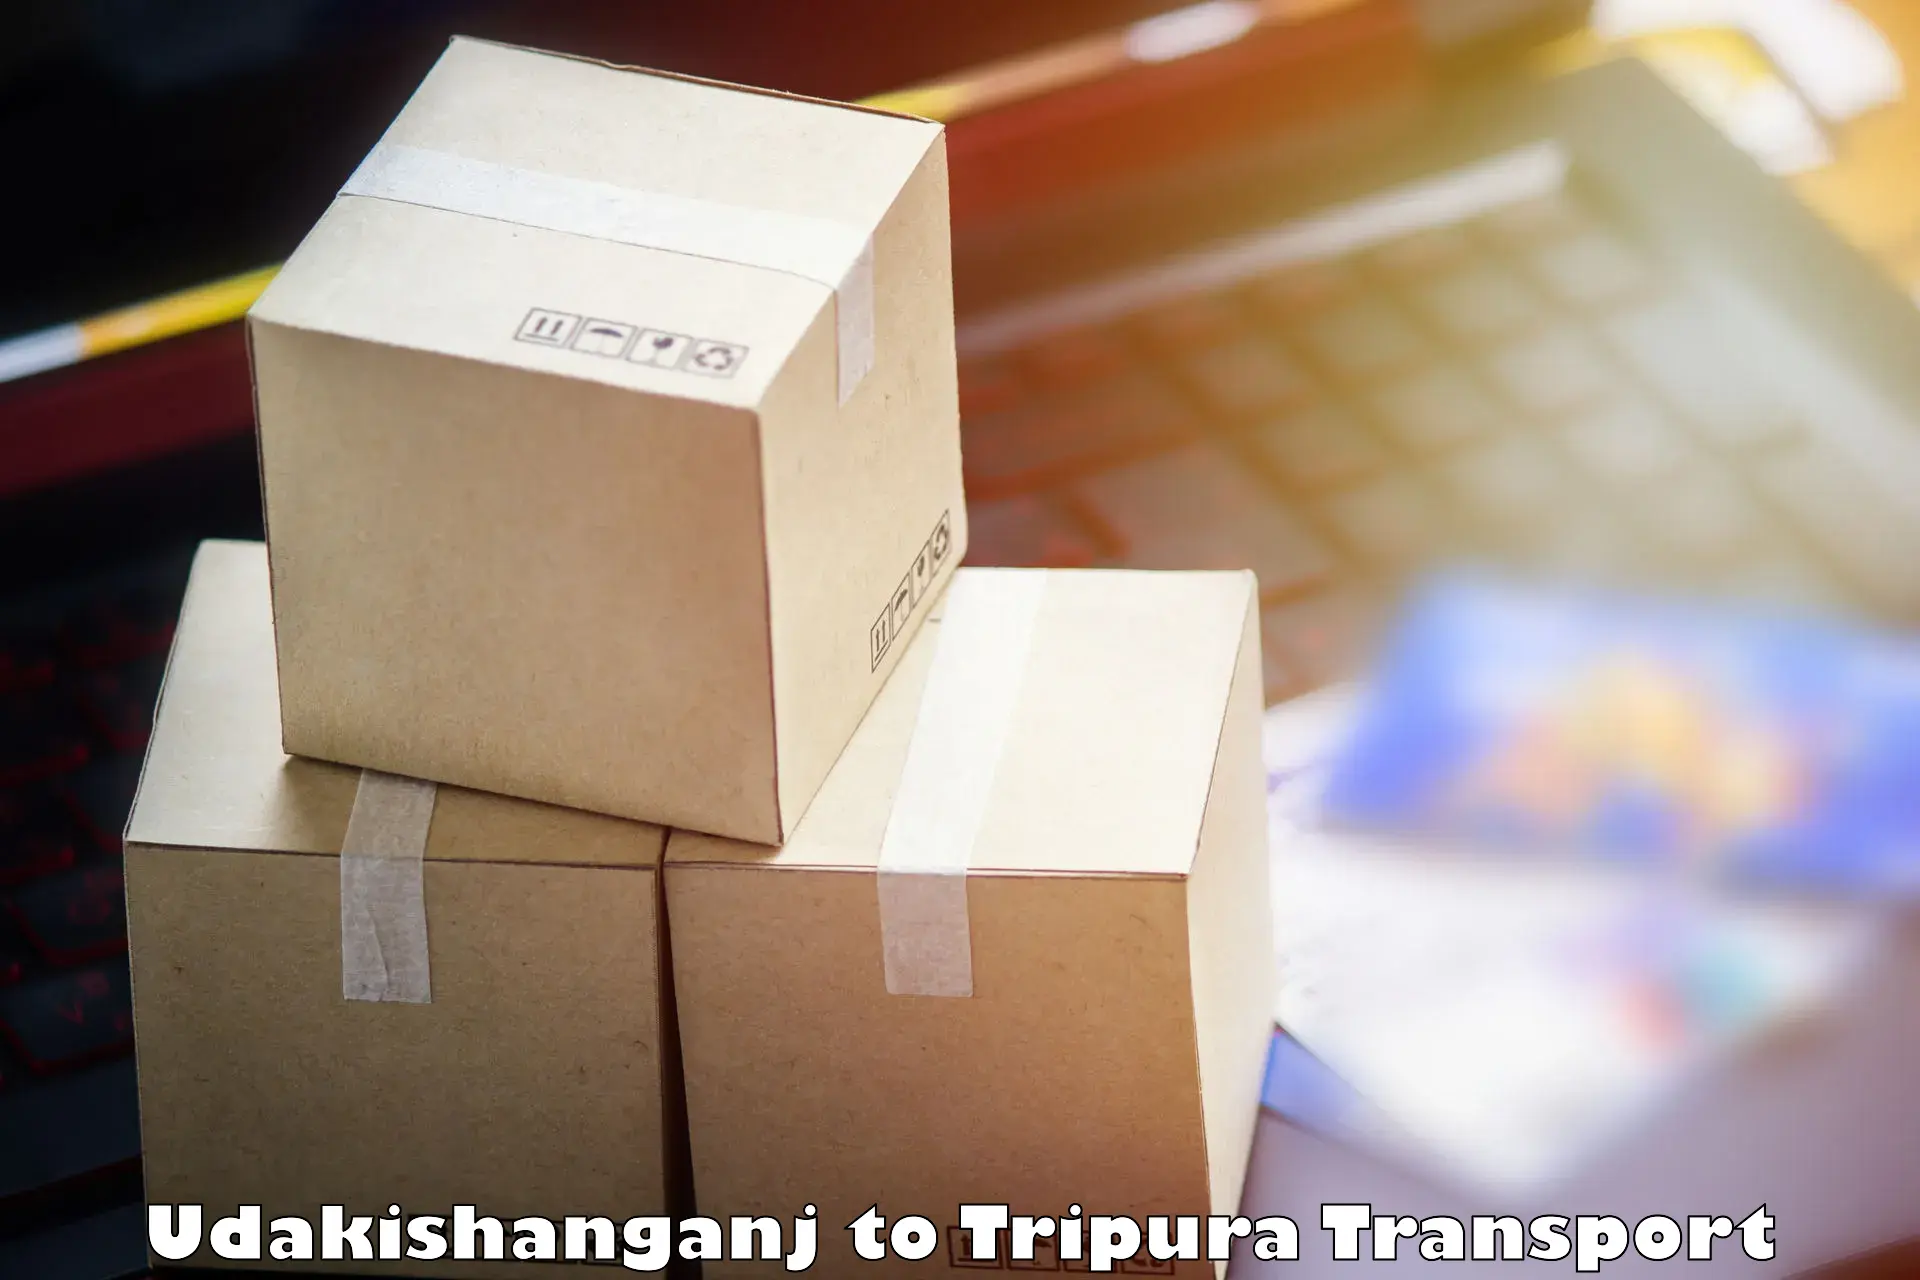 Vehicle parcel service Udakishanganj to Kumarghat